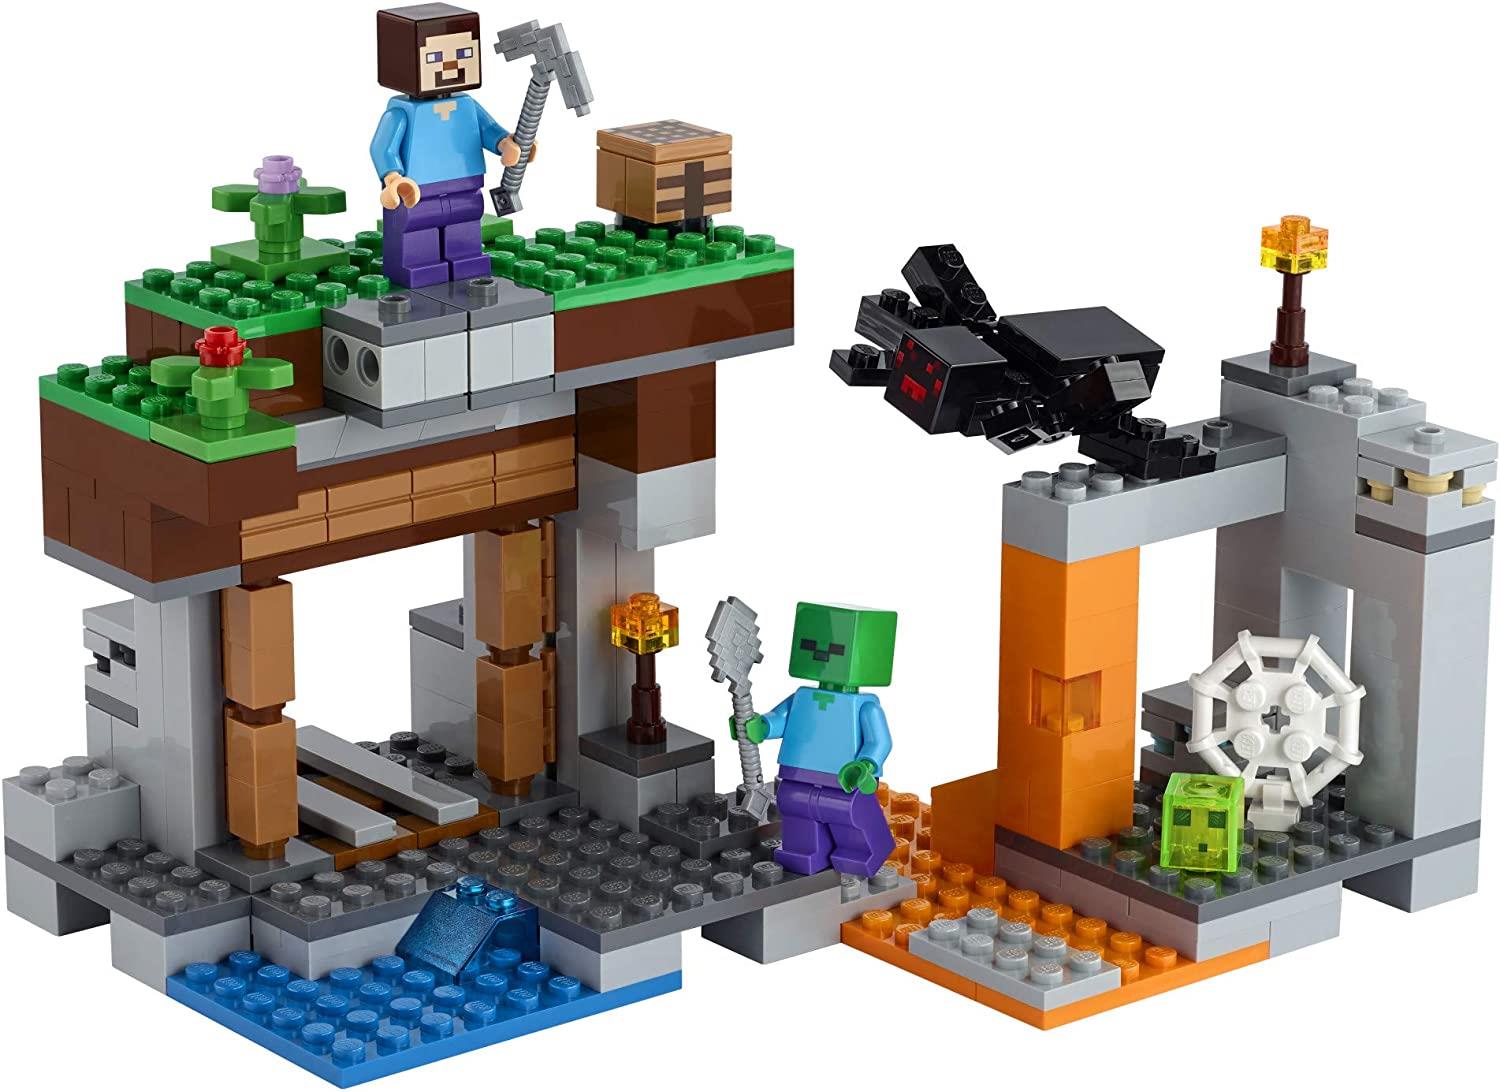 Lego Minecraft 21166 The "Abandoned" Mine